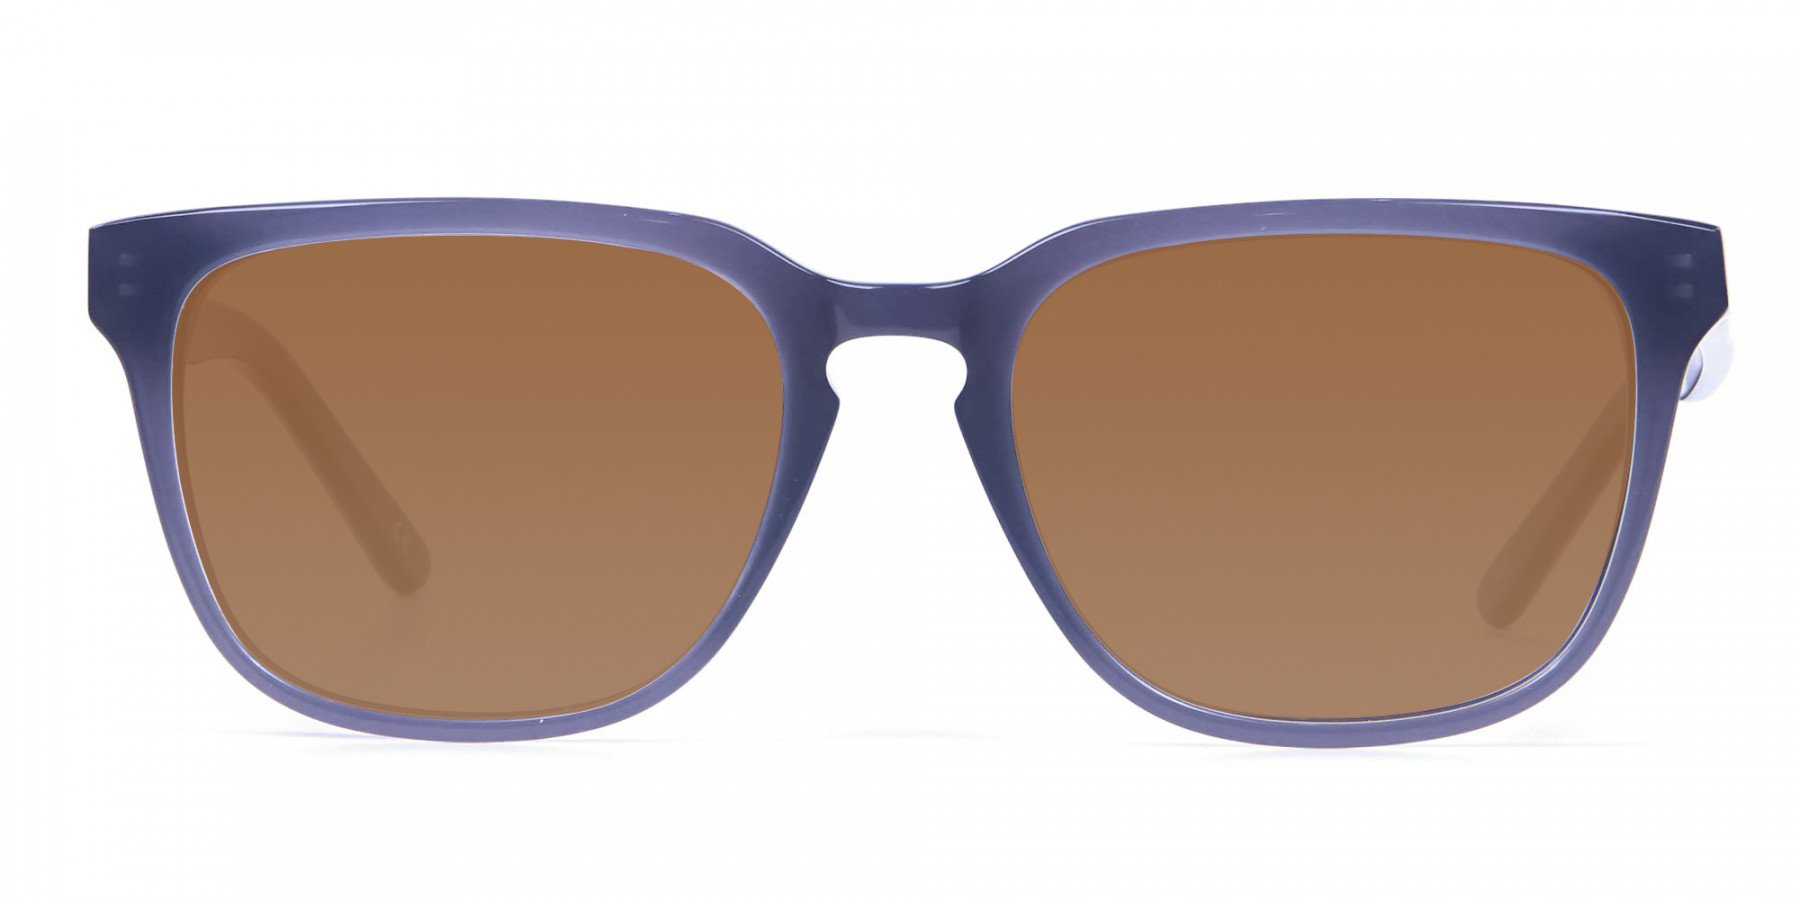 Boxy Sunglasses in Silver Grey  - 3